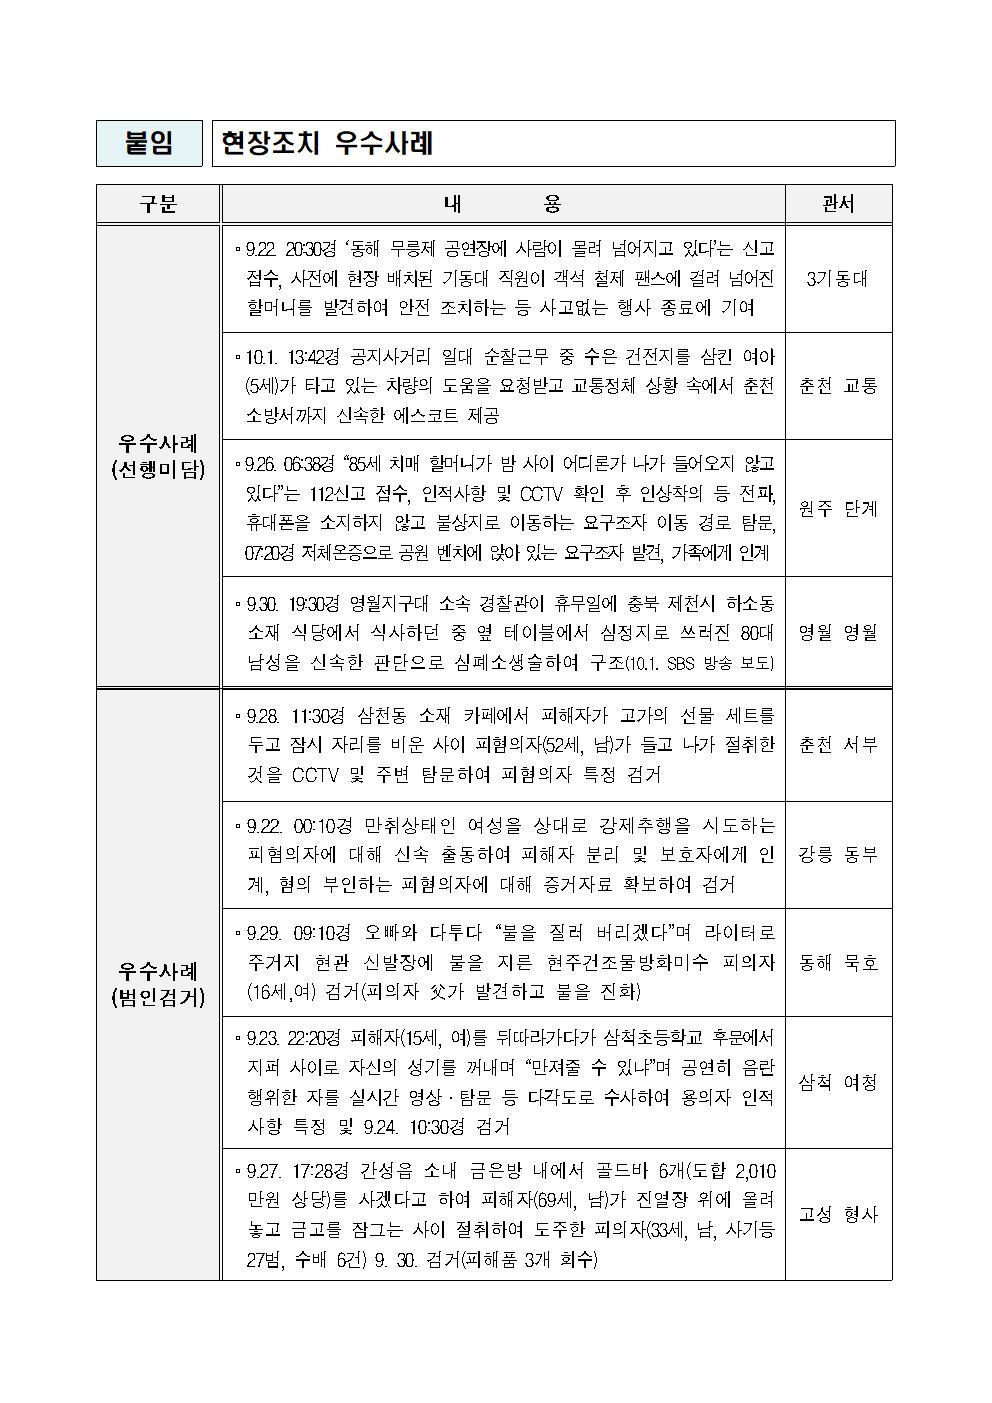 강원경찰, 추석 명절 특별방범활동으로 평온한 치안 유지-추석명절 특별방범대책003